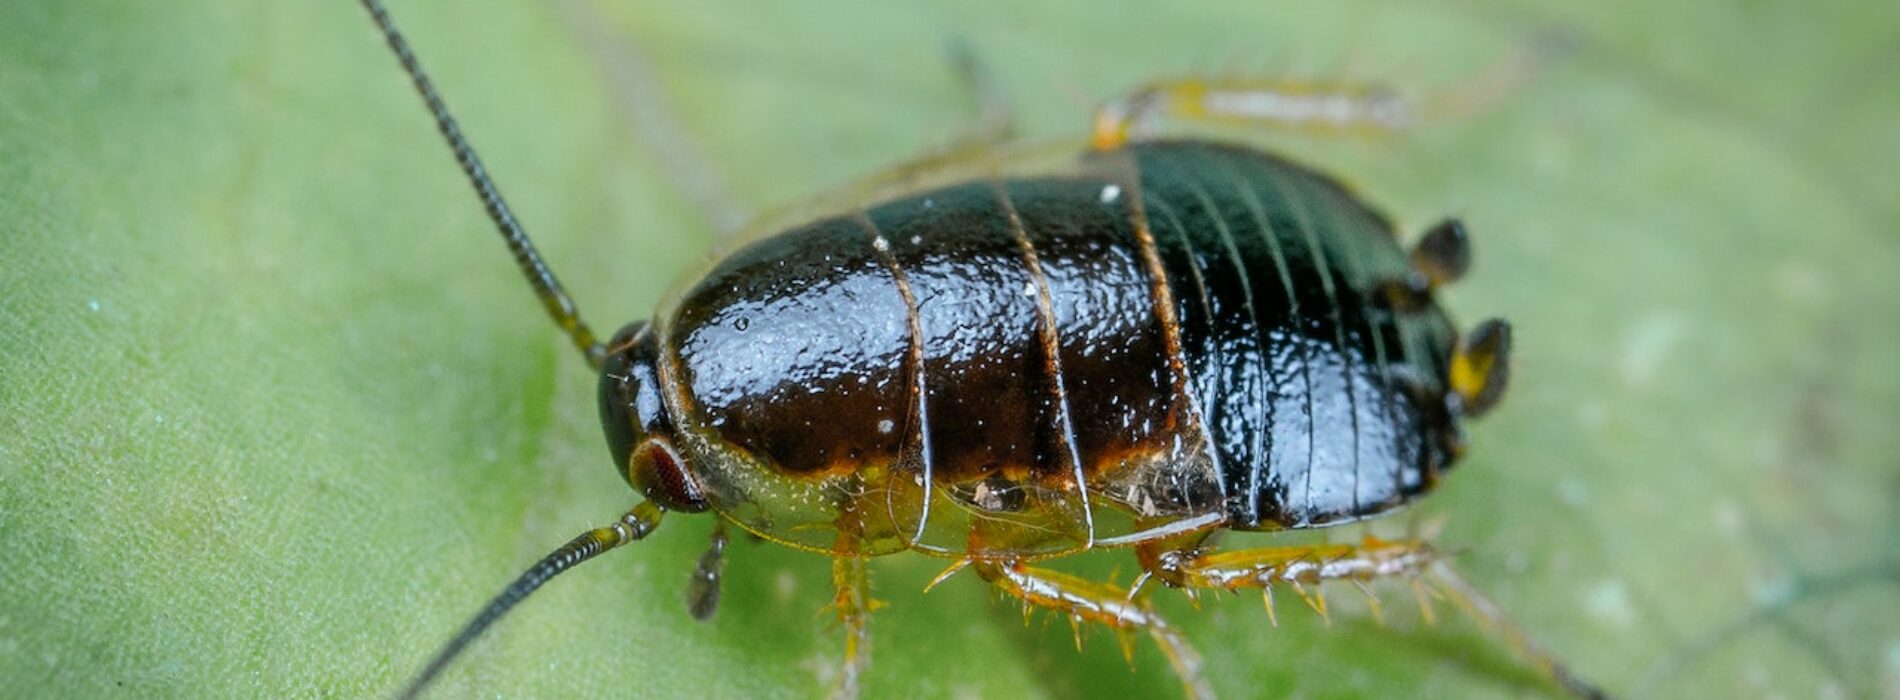 Jak skutecznie pozbyć się karaluchów z domu?